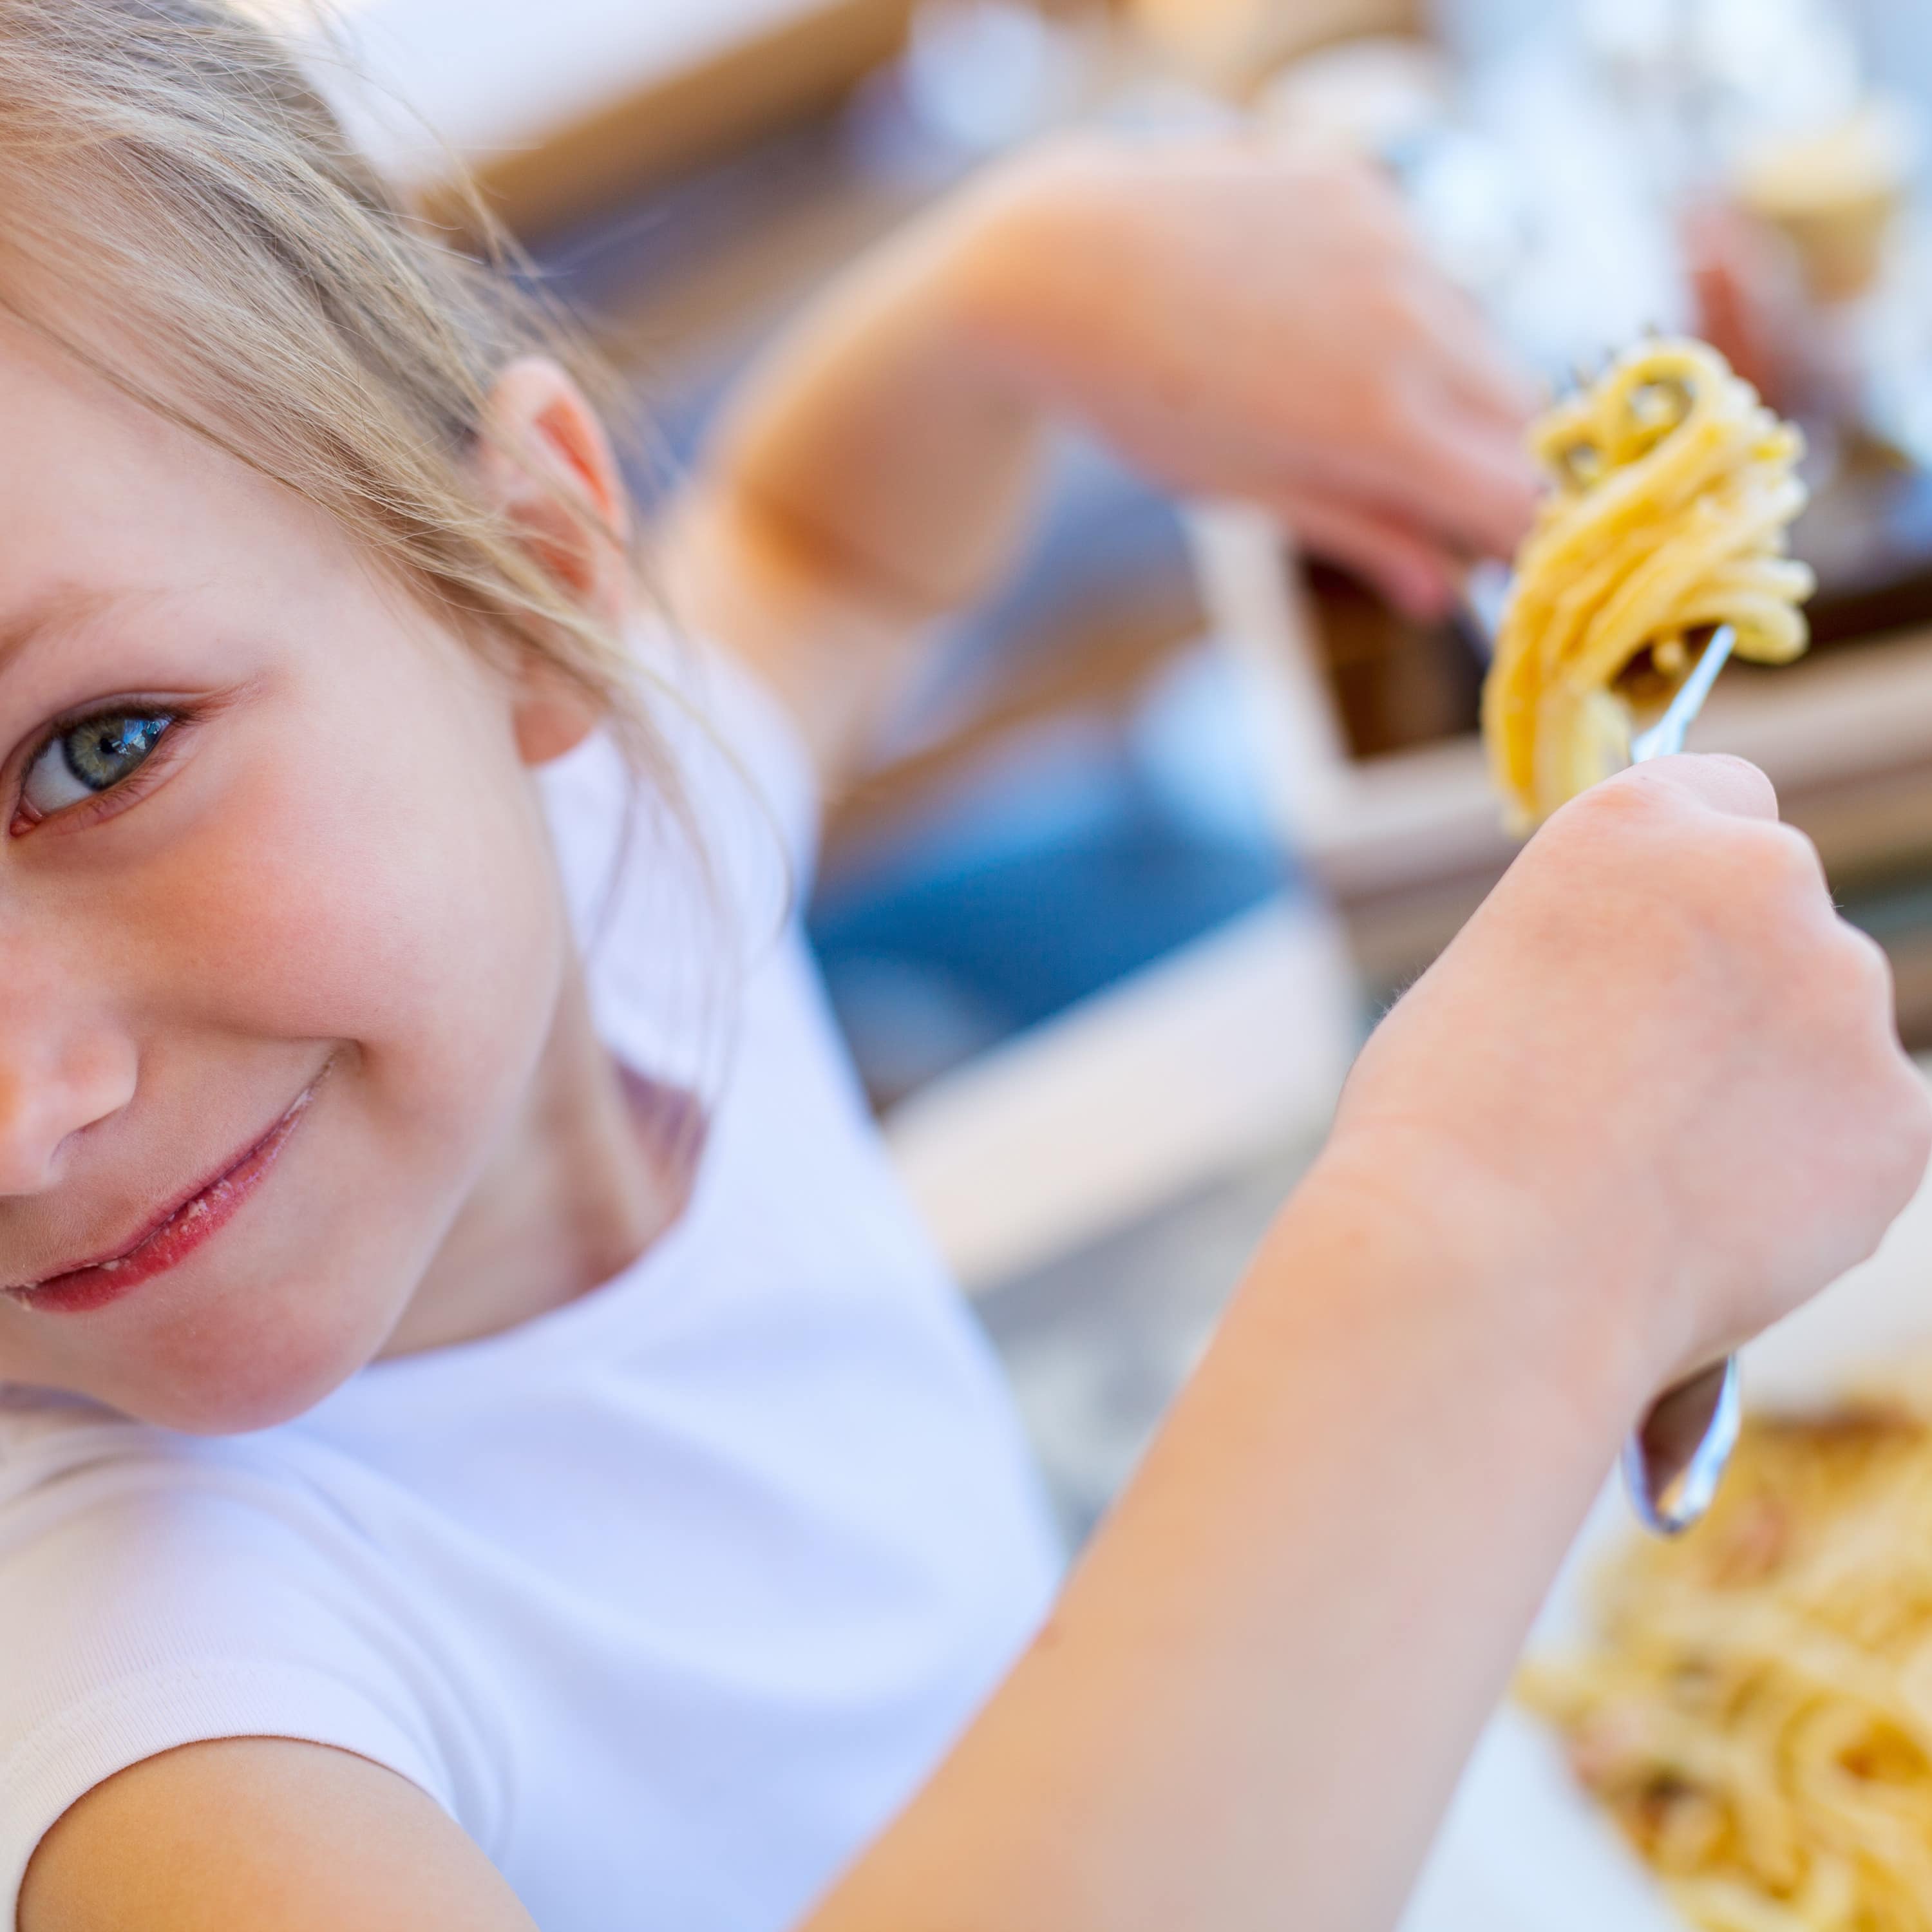 Nahaufnahme: Ein Mädchen in weißem T-Shirt isst Spaghetti und lächelt in die Kamera.